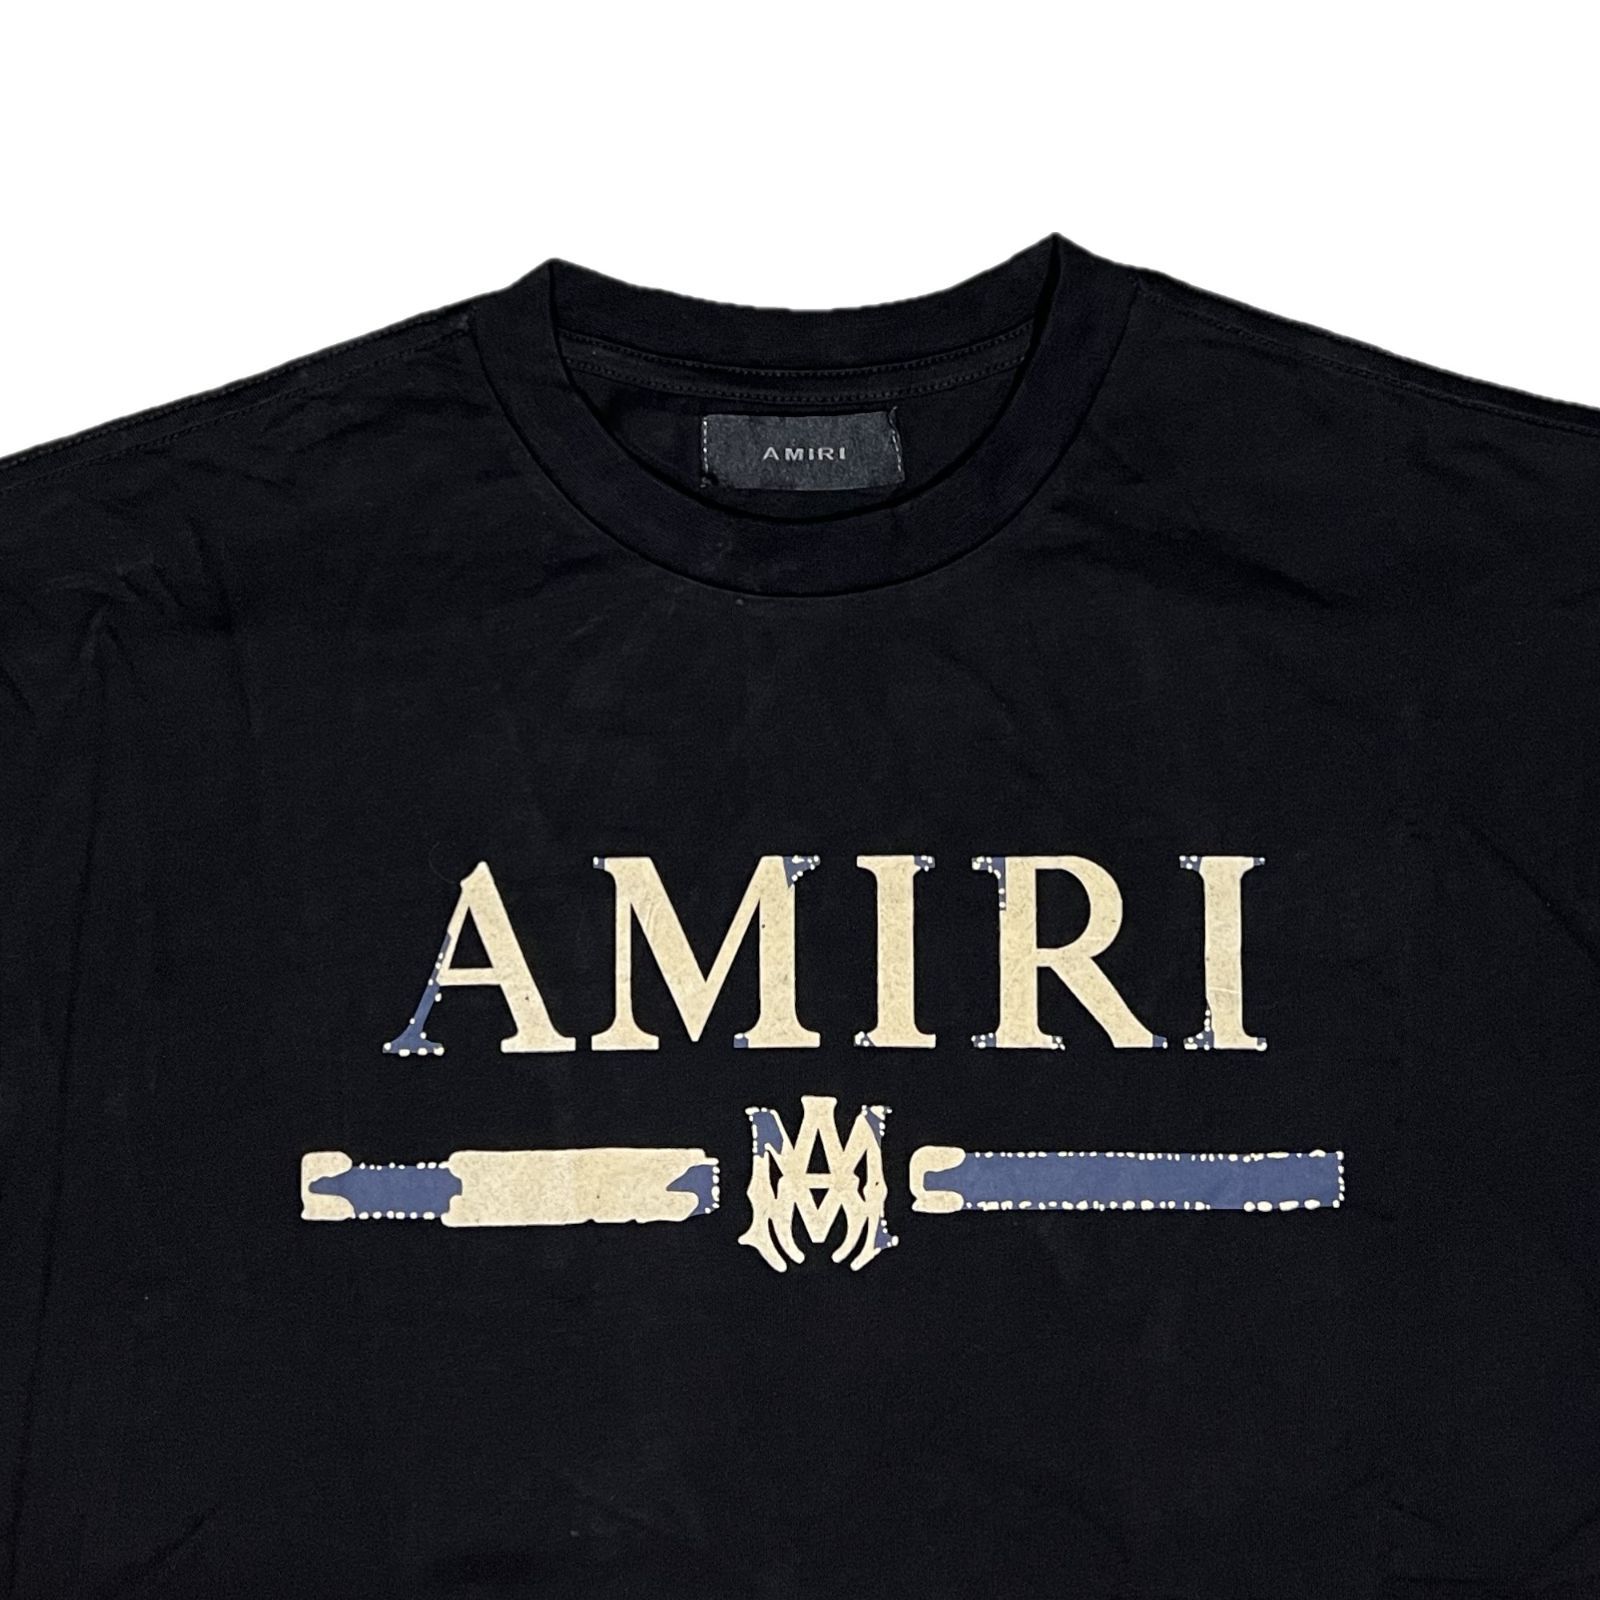 AMIRI アミリ M.A. Bar Appliqué Tシャツ ブラック - メルカリ